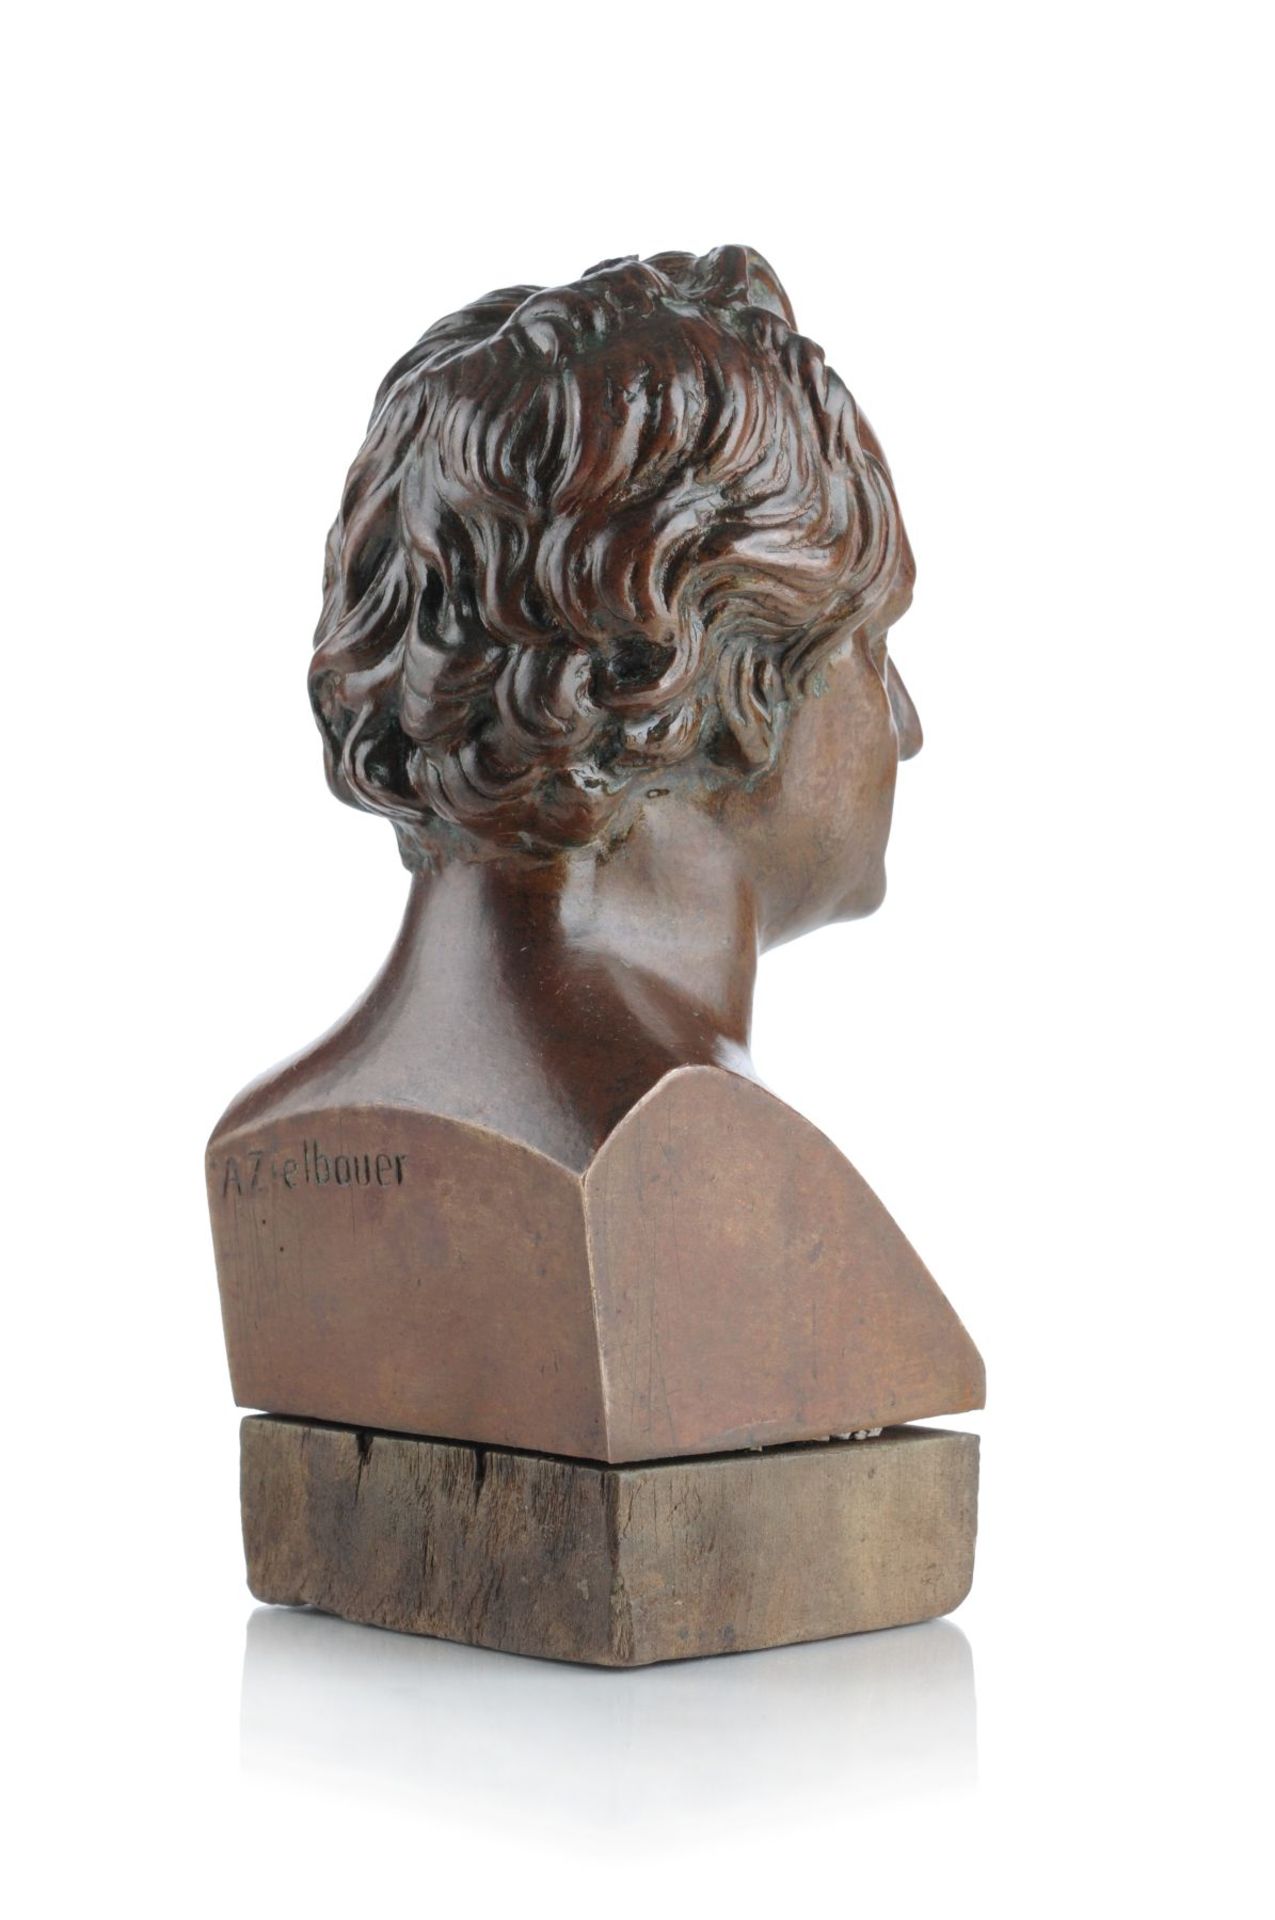 A. Zielbauer, Büste von Johann Wolfgang von Goethe. Um 1900. A. Zielbauer 19./20. Jh.Bronze, - Bild 2 aus 2